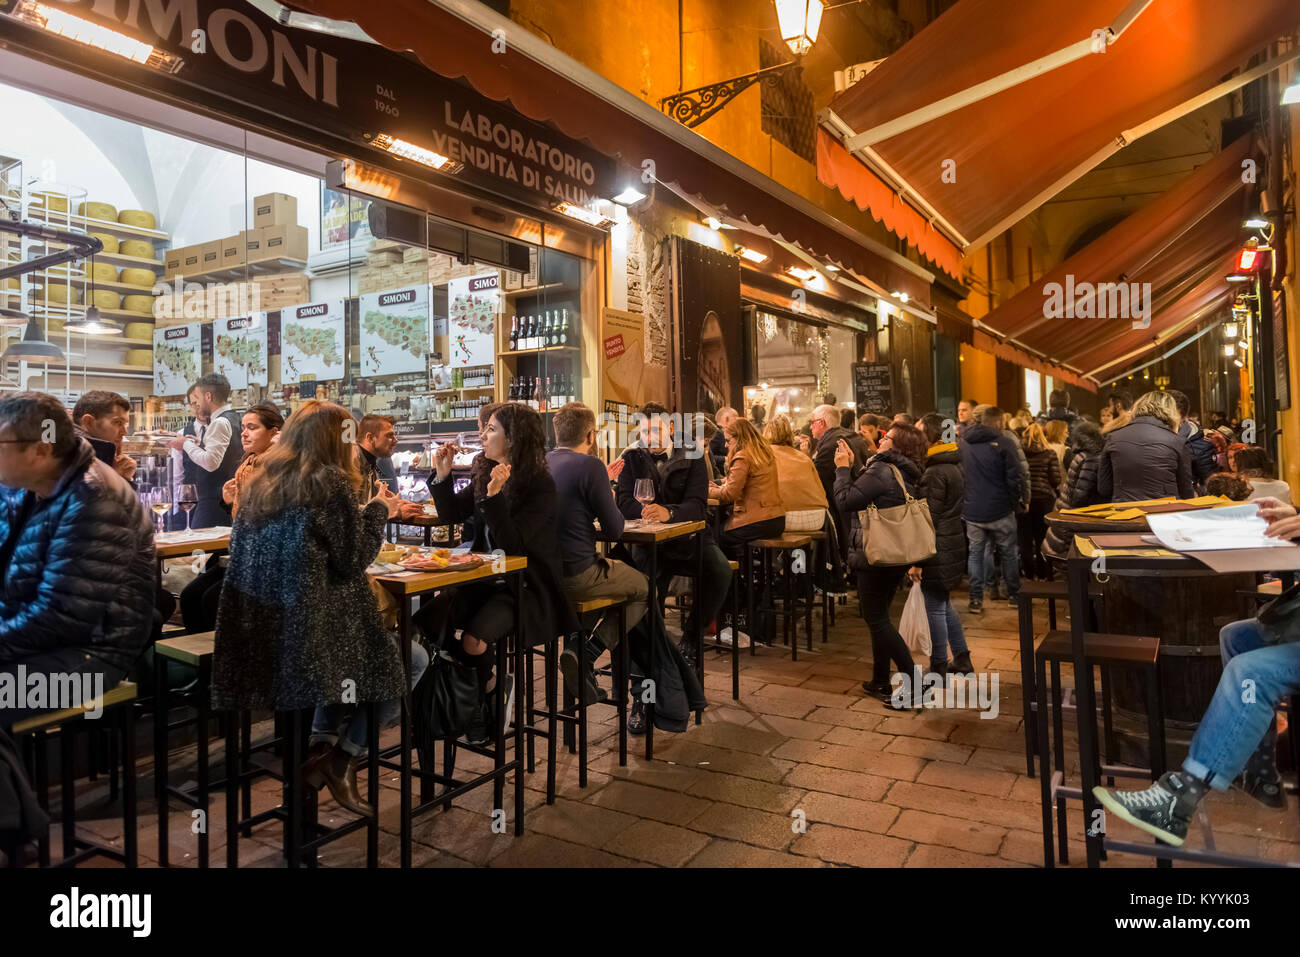 Bologna, Italia - gente seduta fuori a mangiare in ristoranti, caffetterie e bar in Via Pescherie Vecchie, una strada nella città di Bologna, Italia di notte Foto Stock